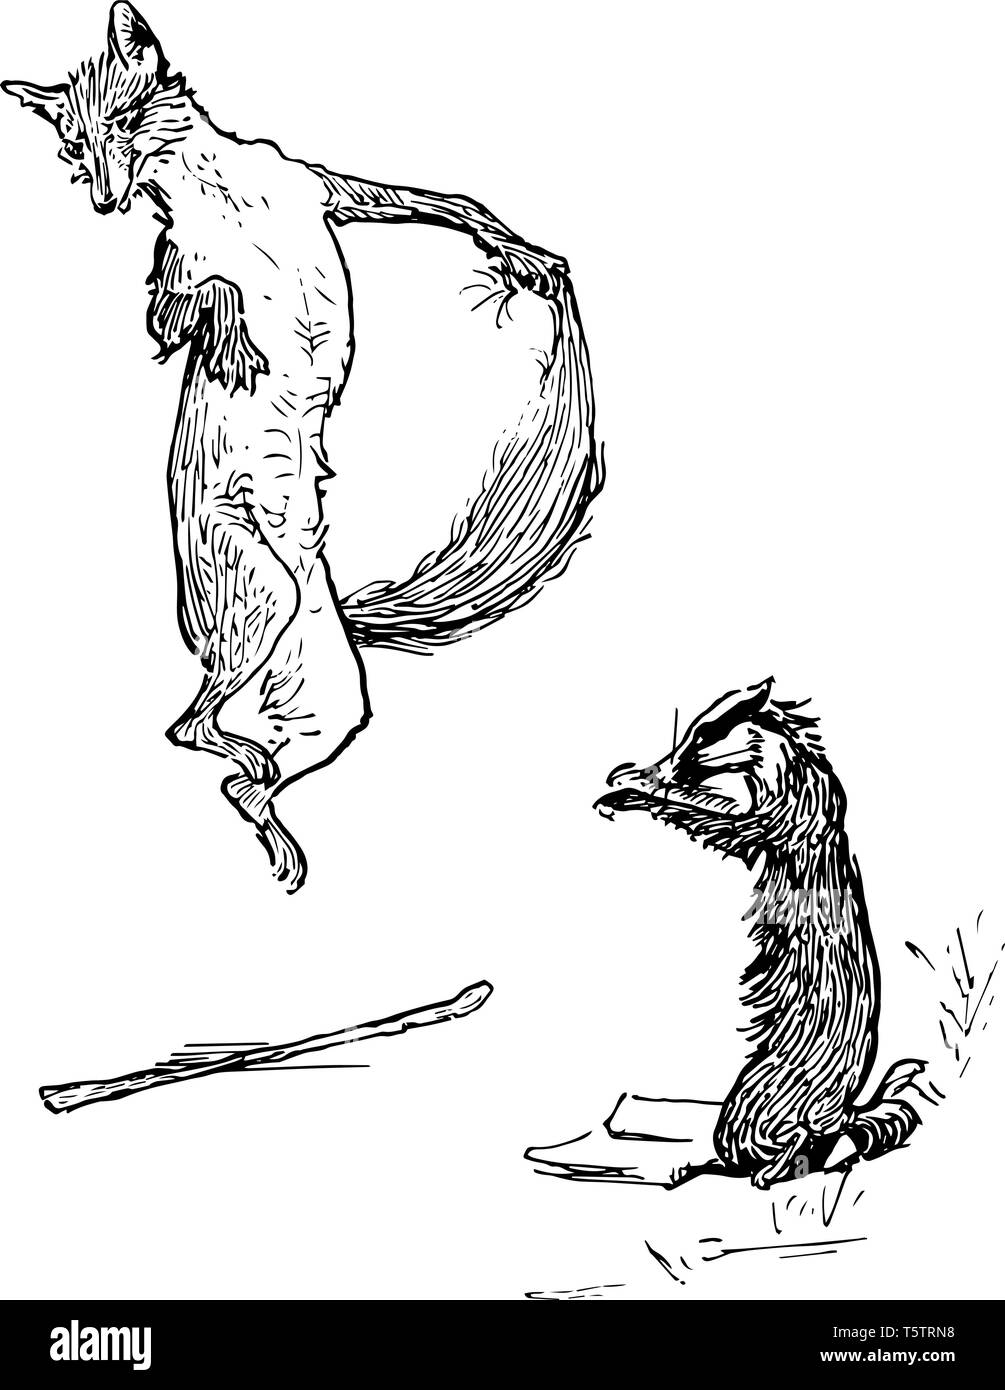 Ein Fuchs über einen Ast auf dem Boden und ein anderes Tier steht in der Nähe springen, vintage Strichzeichnung oder Gravur Abbildung Stock Vektor